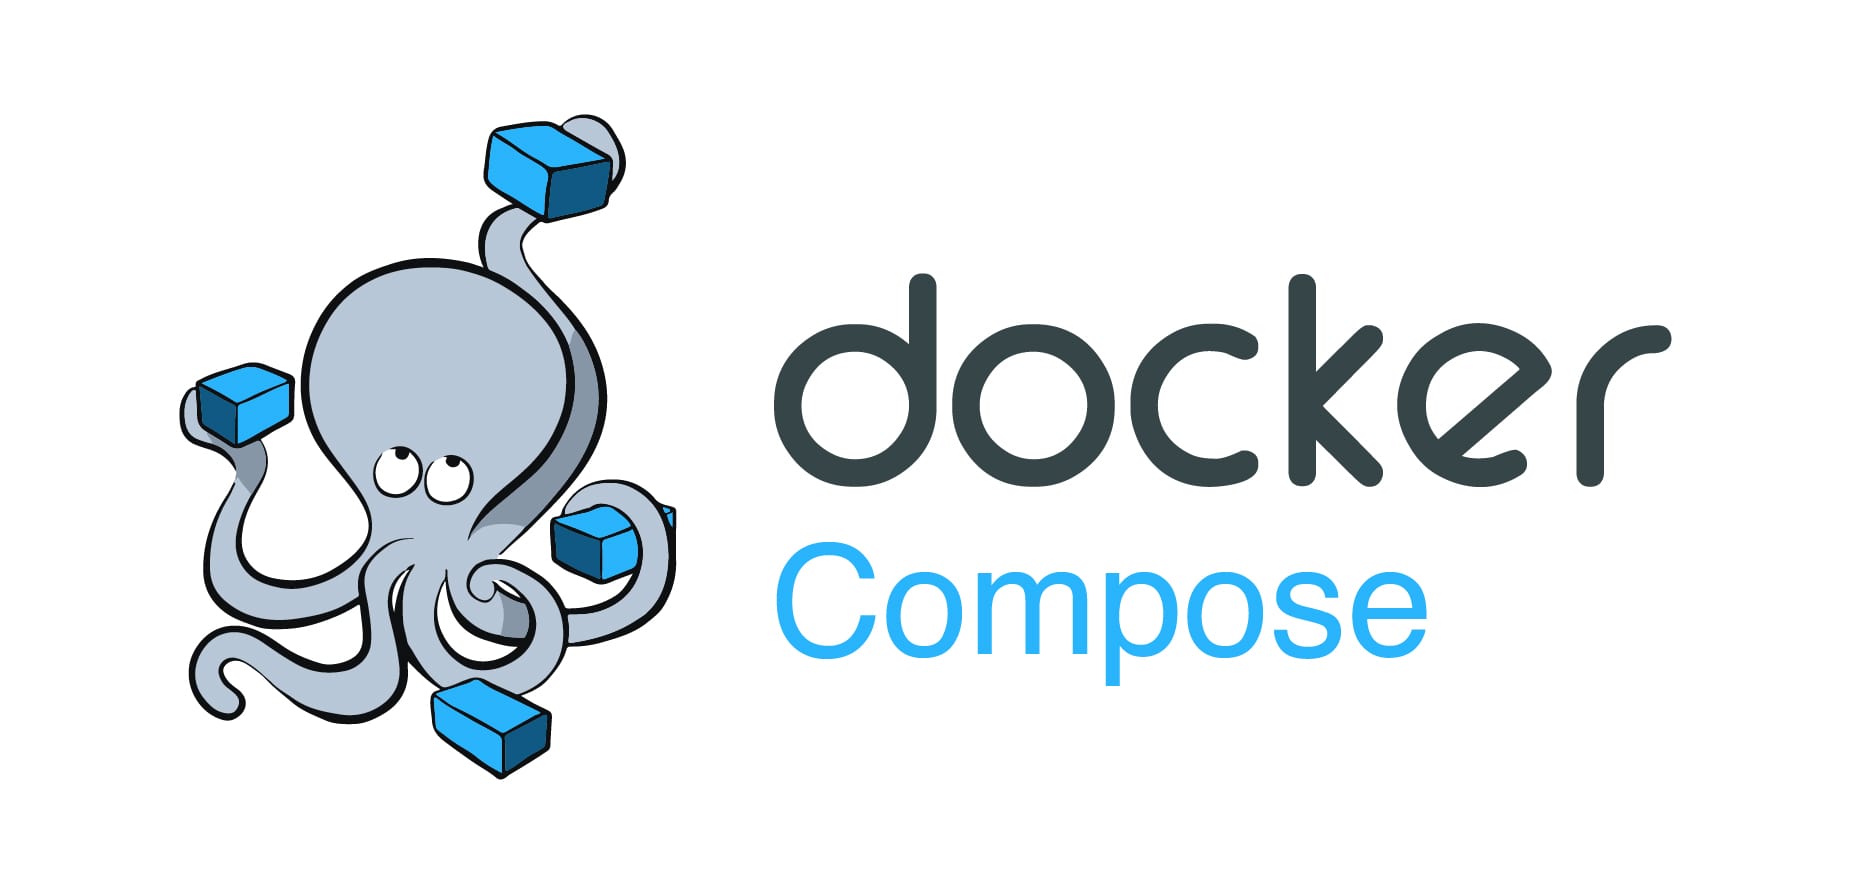 Jenkins als Docker-Compose integration in Portainer